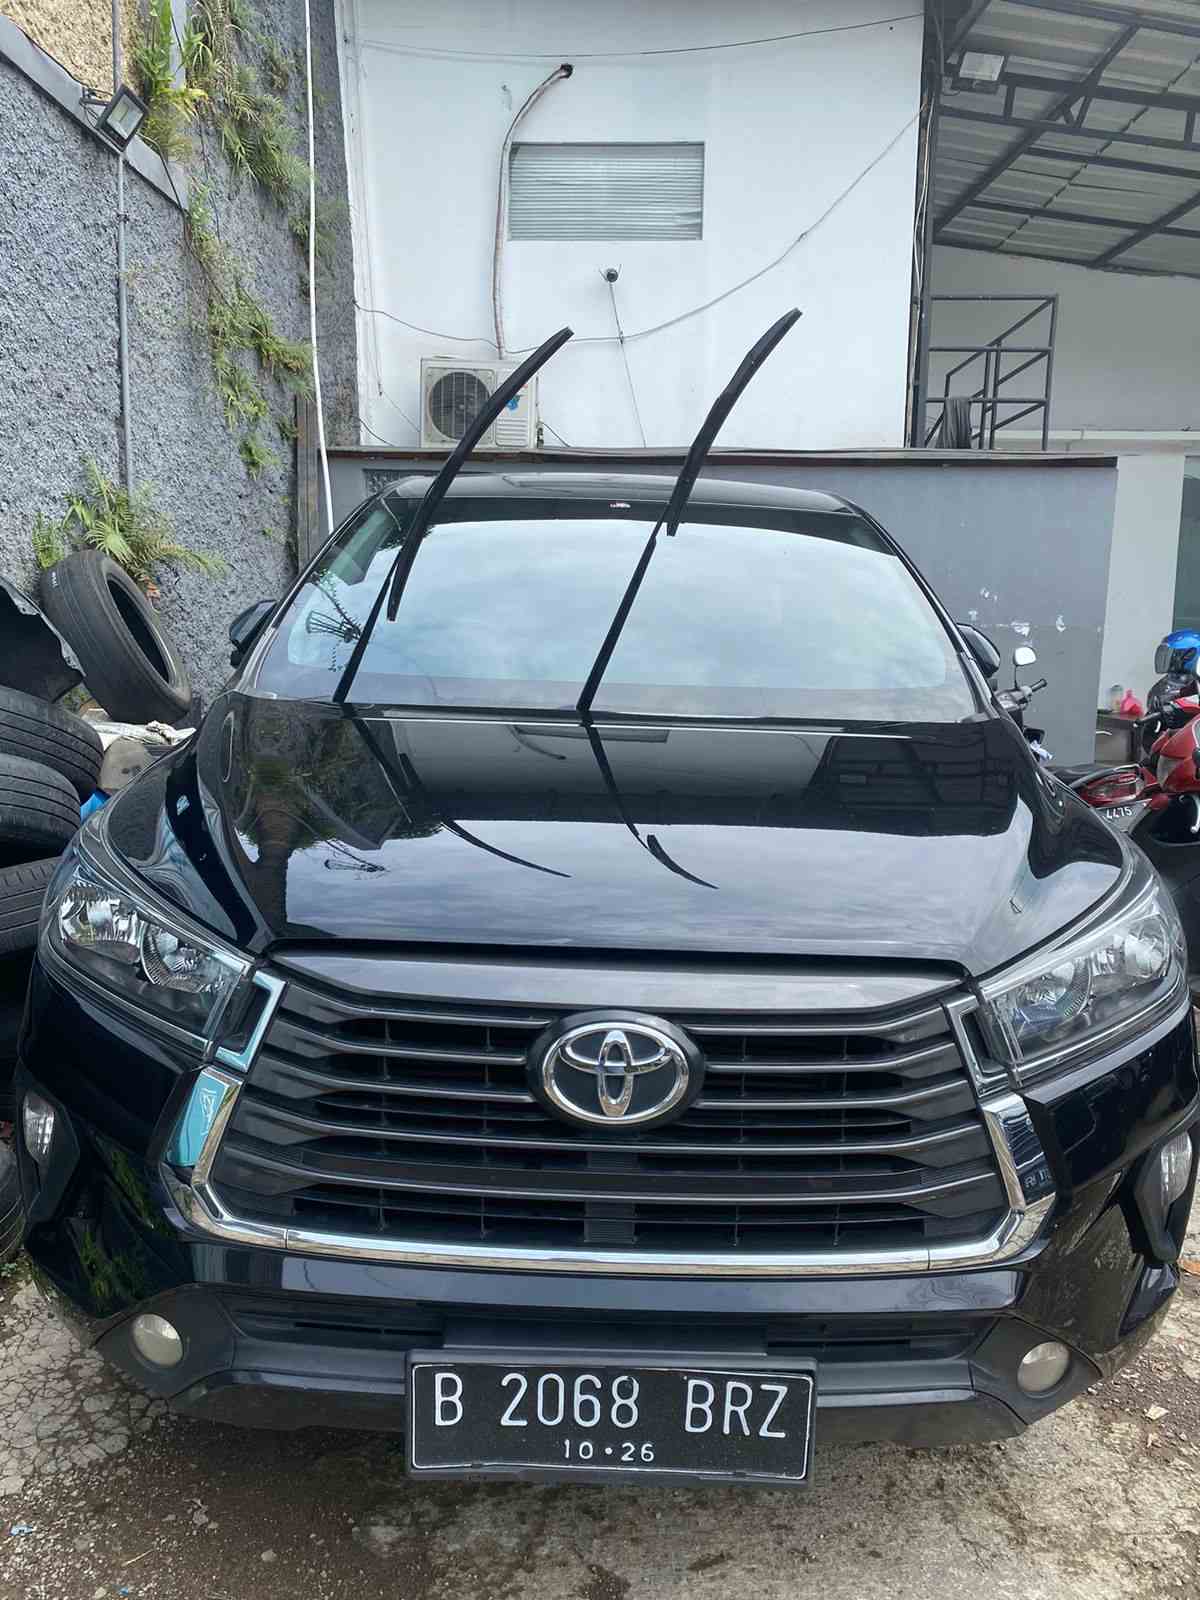 Harga Sewa Mobil Avanza Terbaru Di Bandung